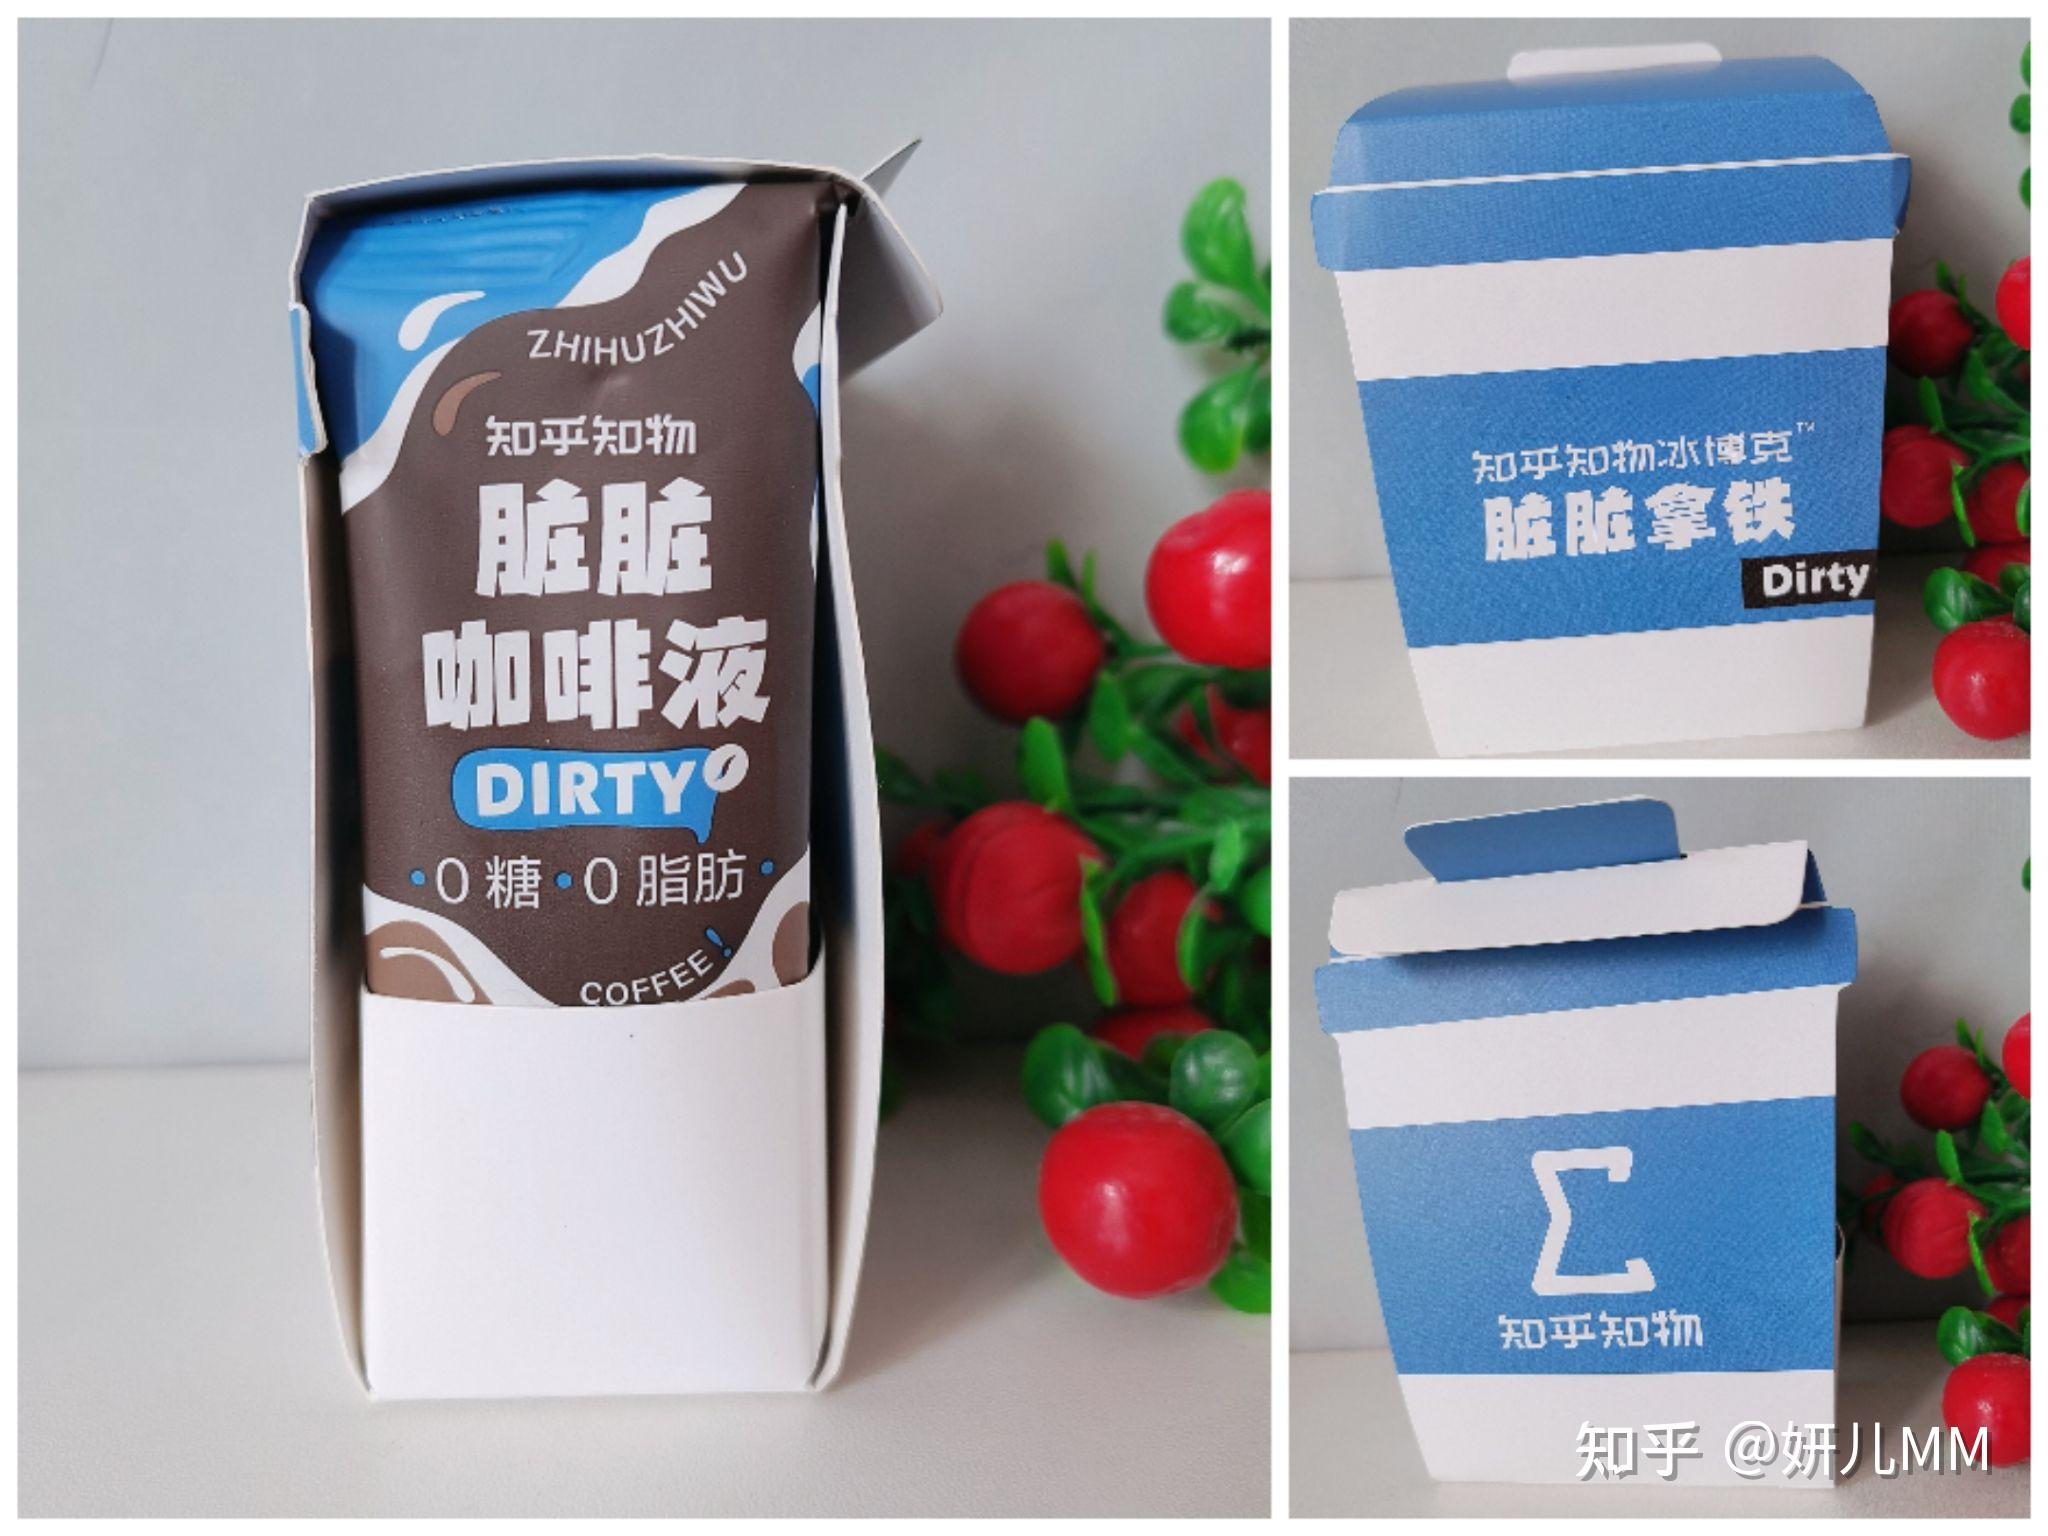 「乐乐茶」推出3款欧包新品和5款水牛奶系列新品-FoodTalks全球食品资讯